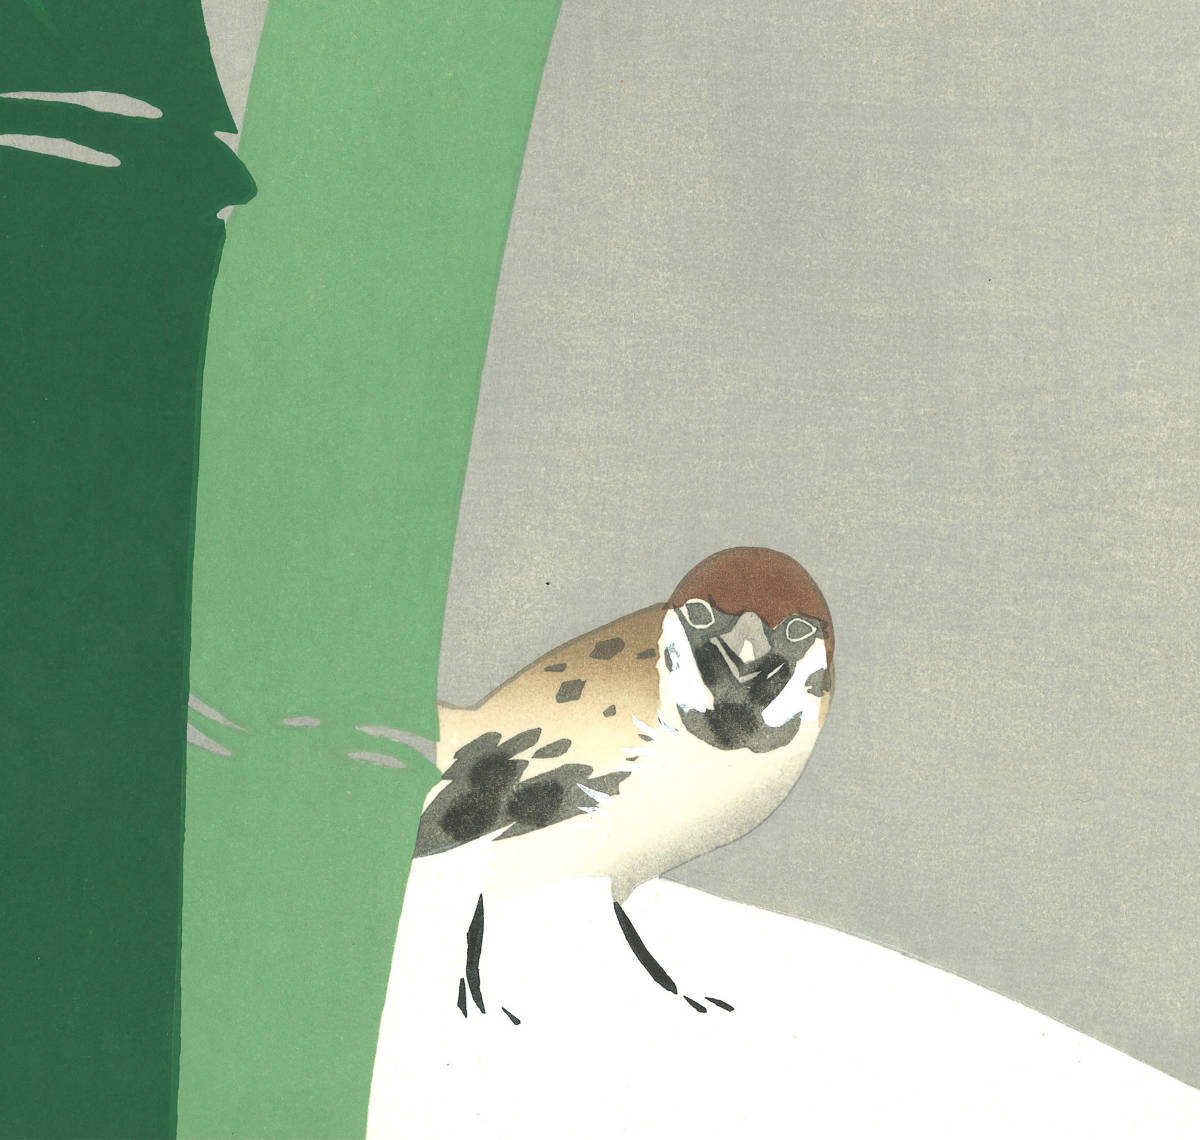 神坂雪佳 (Kamisaka Sekka) 木版画 　No.2 雪中竹 Sparrow in snow 　初版　明治期 　京都の一流の摺師の技をご堪能くださいませ!!_画像7